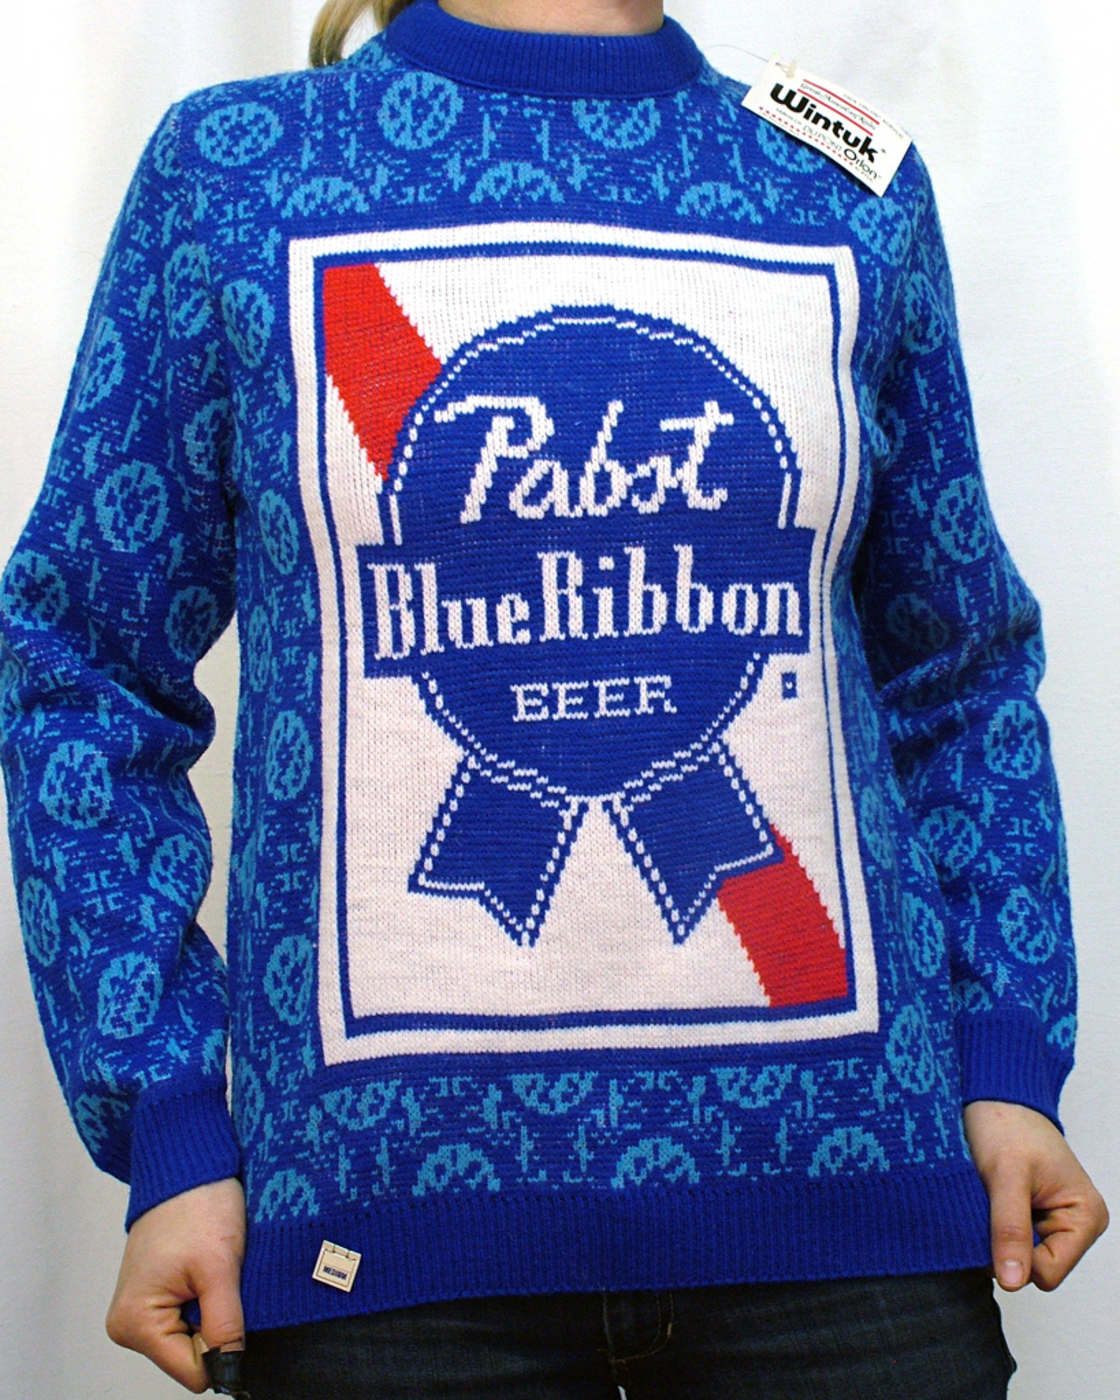 beer sweater - Wintuk .. ... lory Pabot Blue Ribbon Eeef ww Ww www wwwwww 49